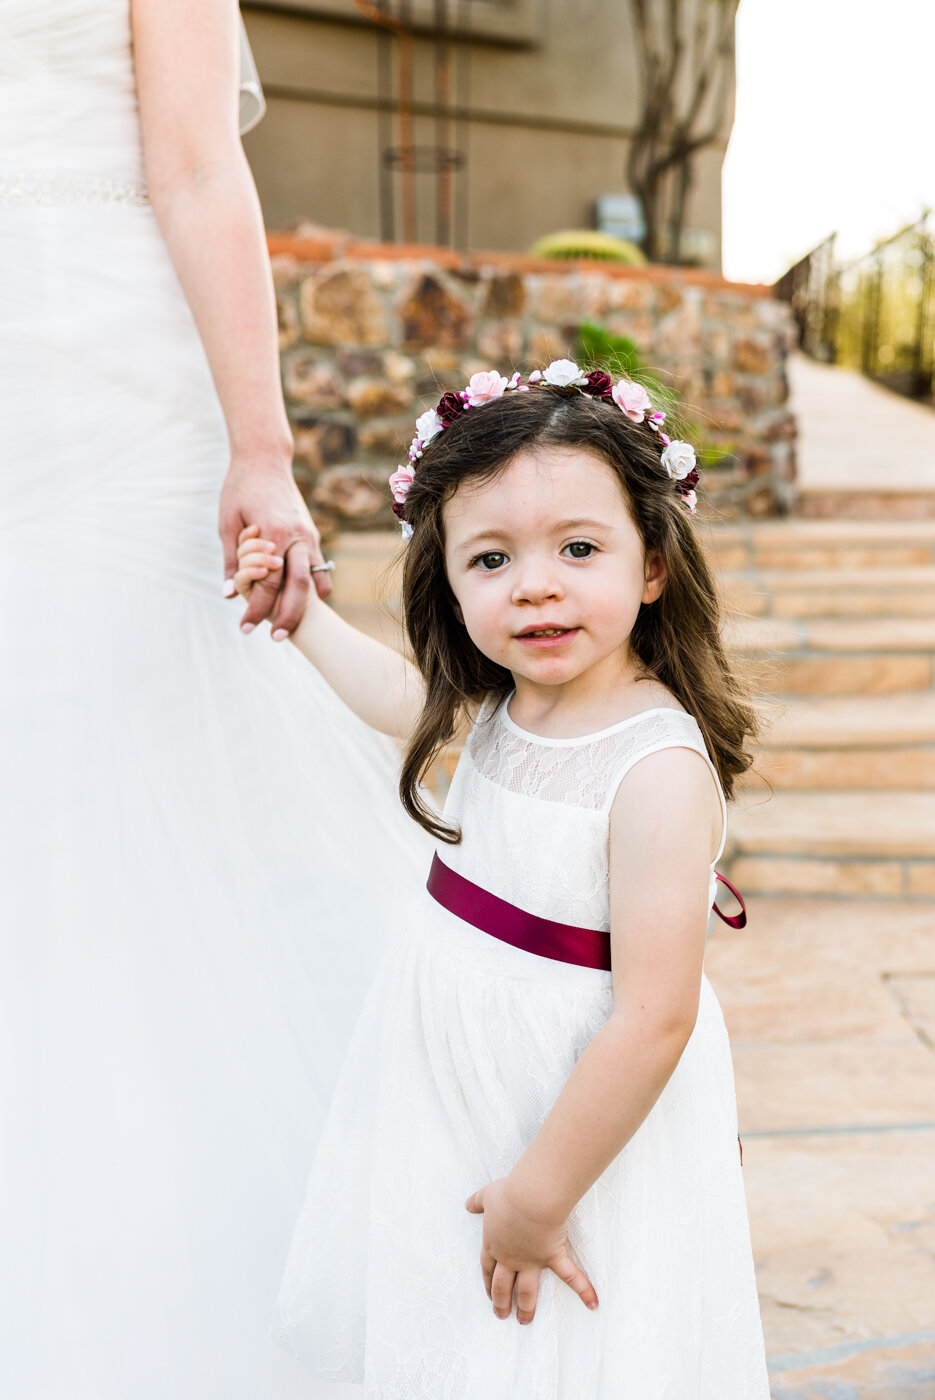 Bride-Flower girl-Wedding-Ceremony-Arvada-Denver-Tucson-Love-Marriage-family1.jpg